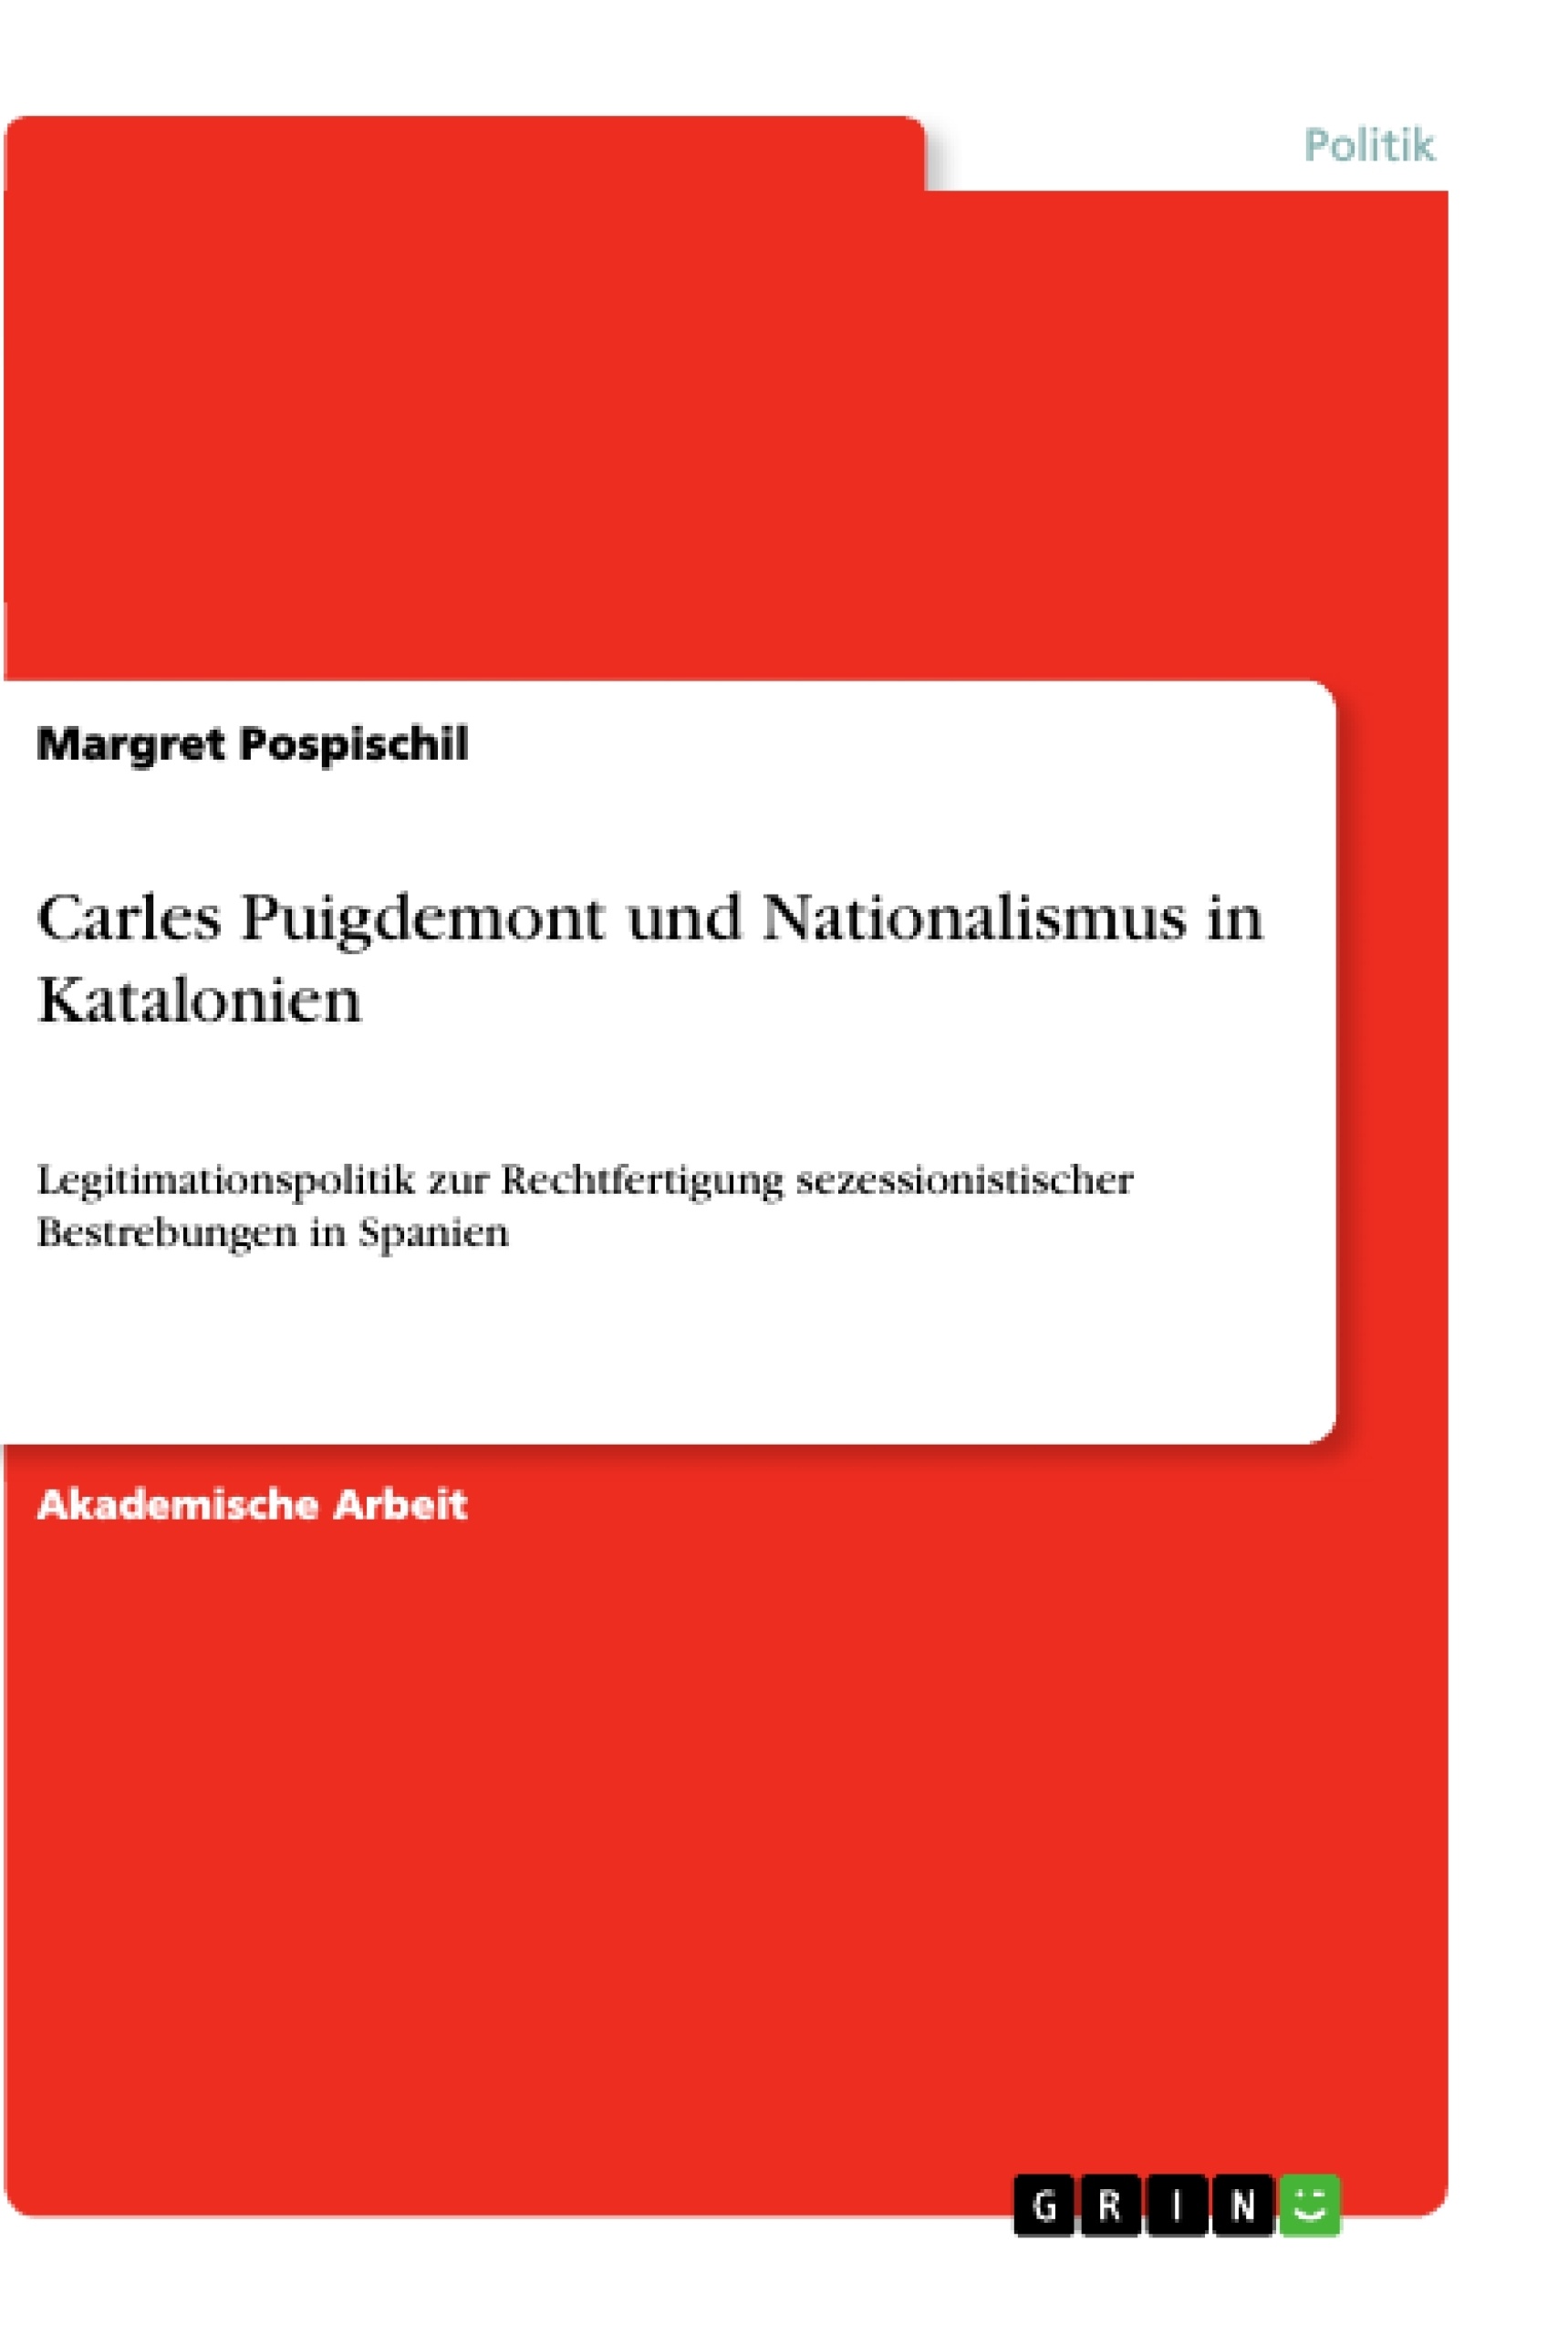 Title: Carles Puigdemont und Nationalismus in Katalonien